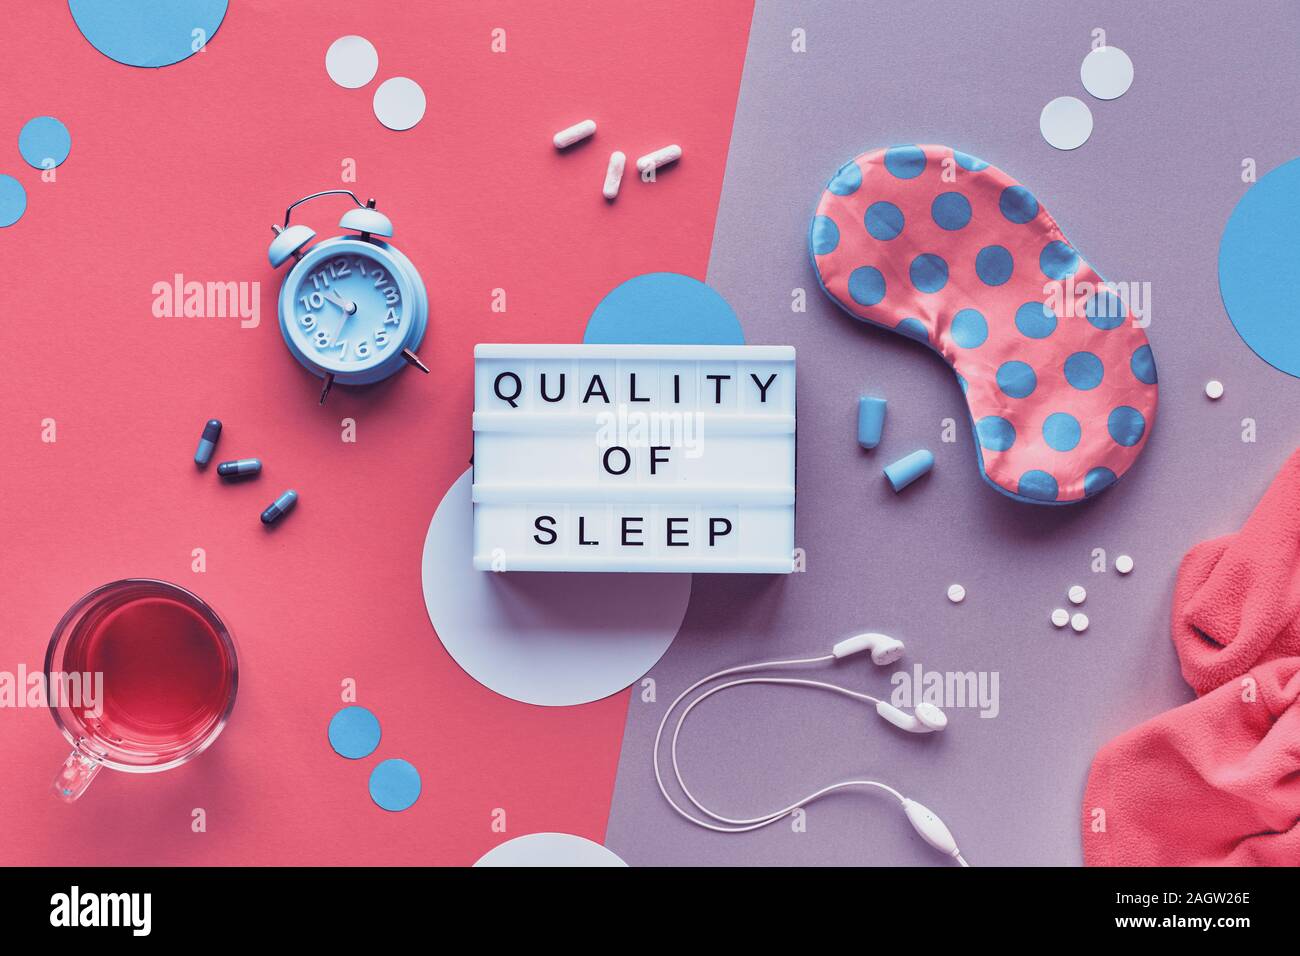 Nuit de sommeil sain concept créatif. Masque de sommeil, menthe bleue, alarme, bouchons d'écouteurs. Deux tons rose et fond argenté avec des cercles de papier. Fla Banque D'Images